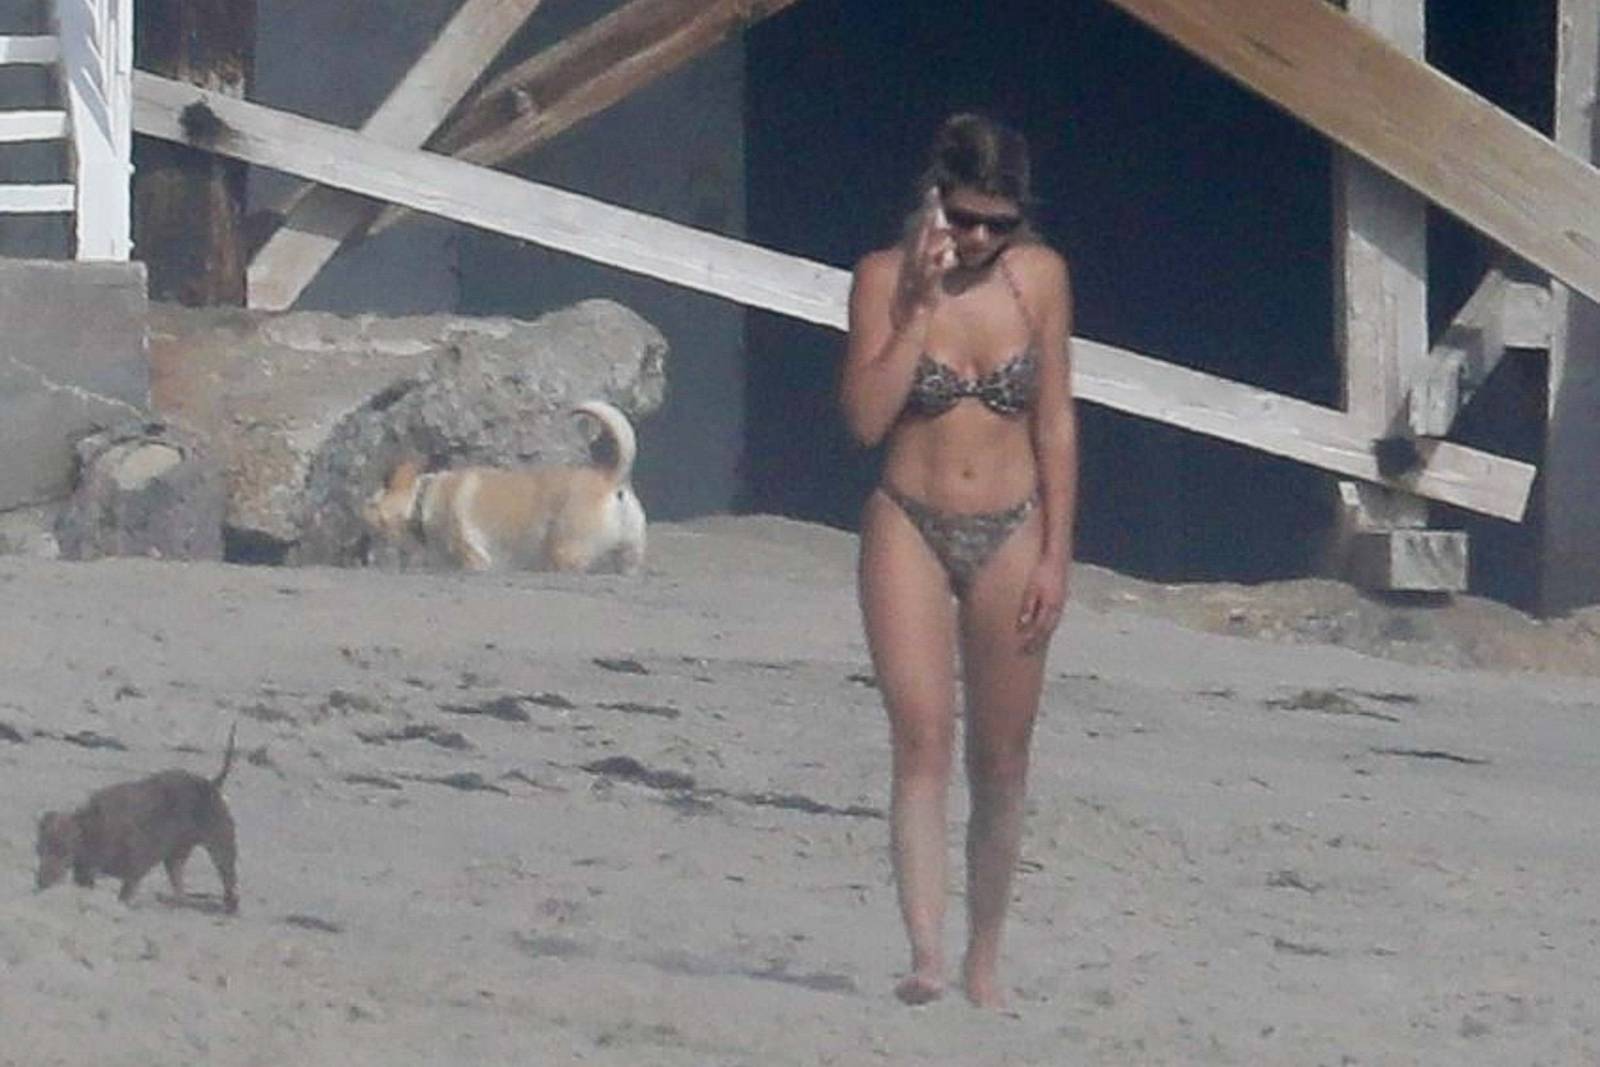 Sofia Richie 2020 : Sofia Richie - In bikini on a beach in Malibu -01. 